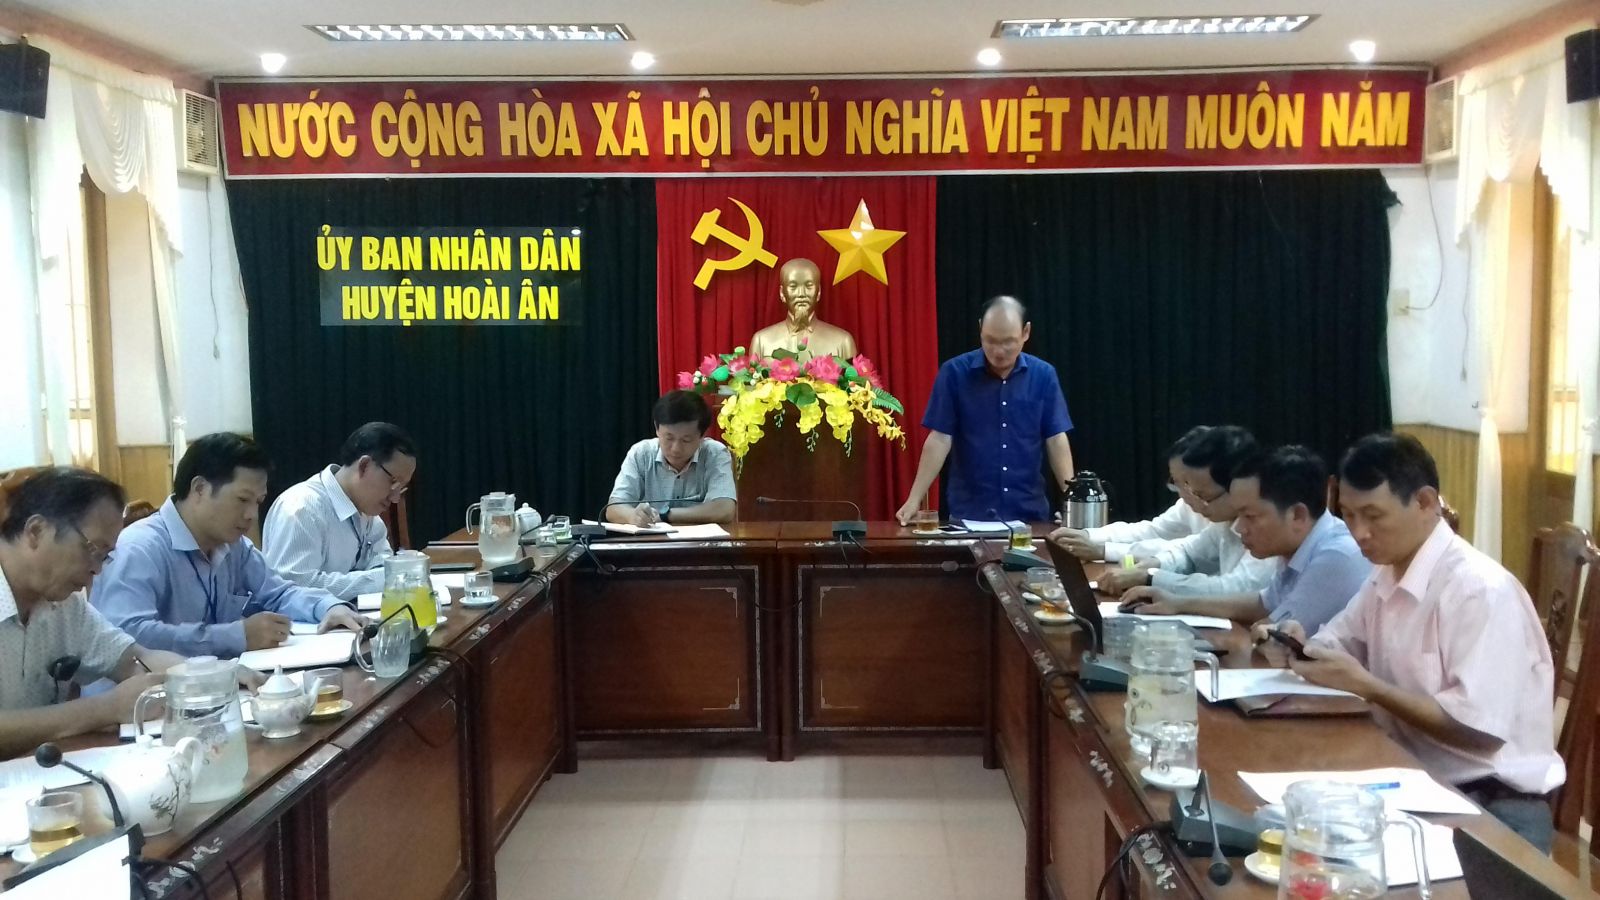 Quang cảnh kiểm tra công tác CCHC tại UBND huyện Hoài Ân